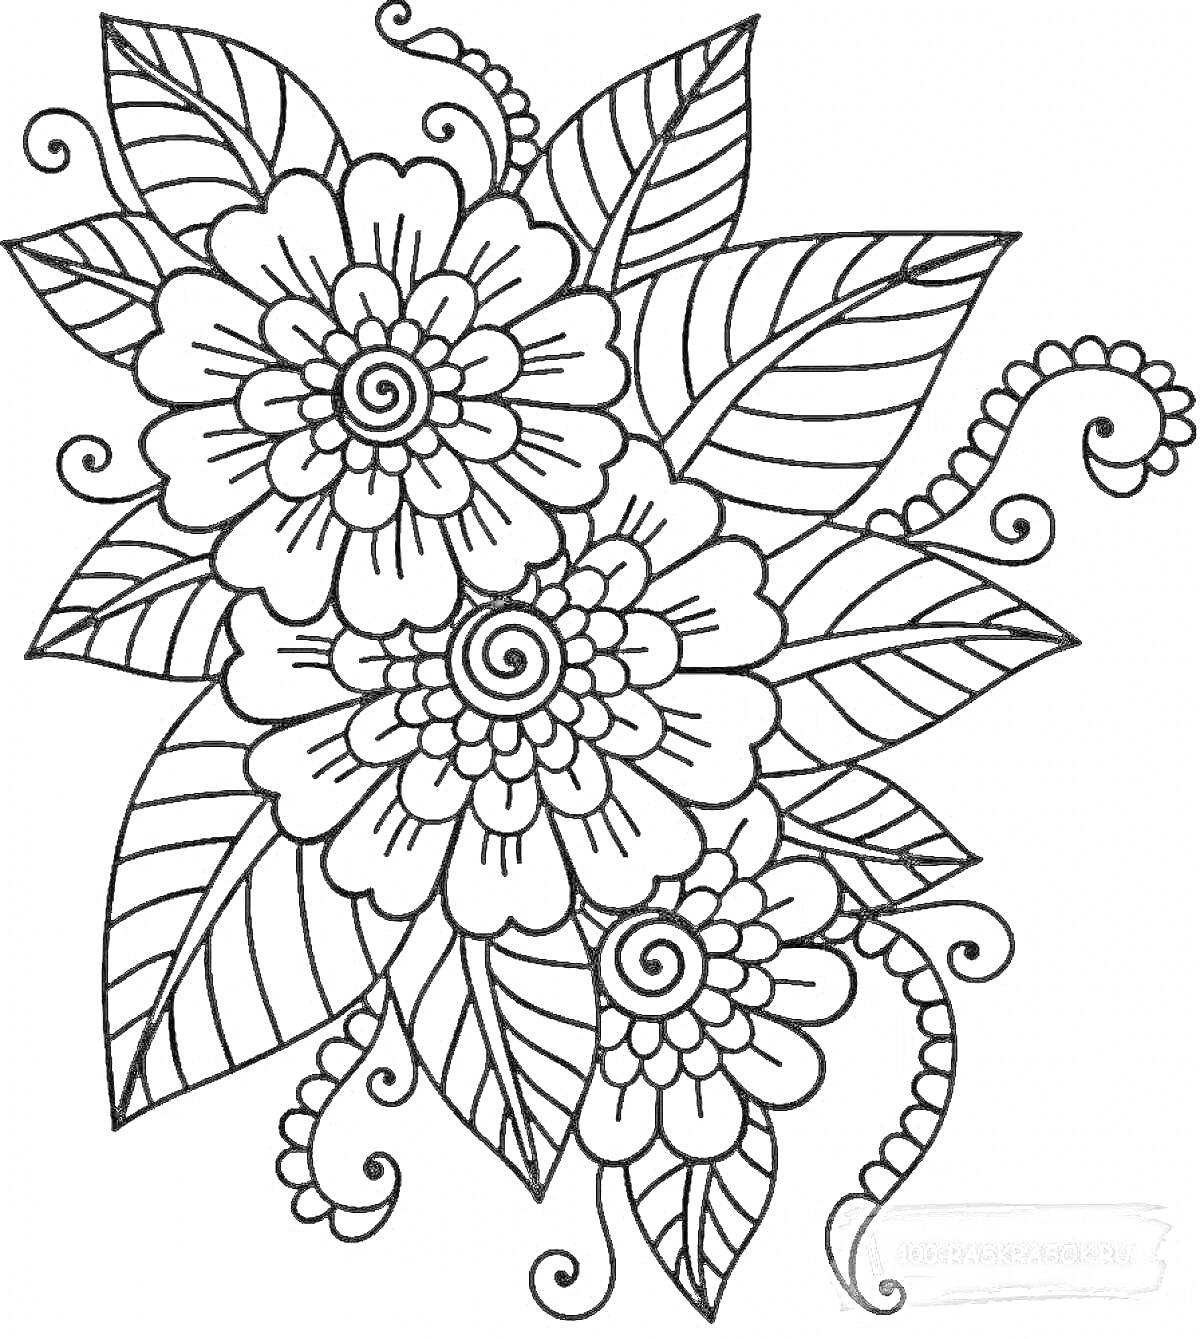 Раскраска Букет из трех цветков с крупными лепестками и спиральными центрами, окруженный большими и мелкими листьями с прожилками и декоративными завитками